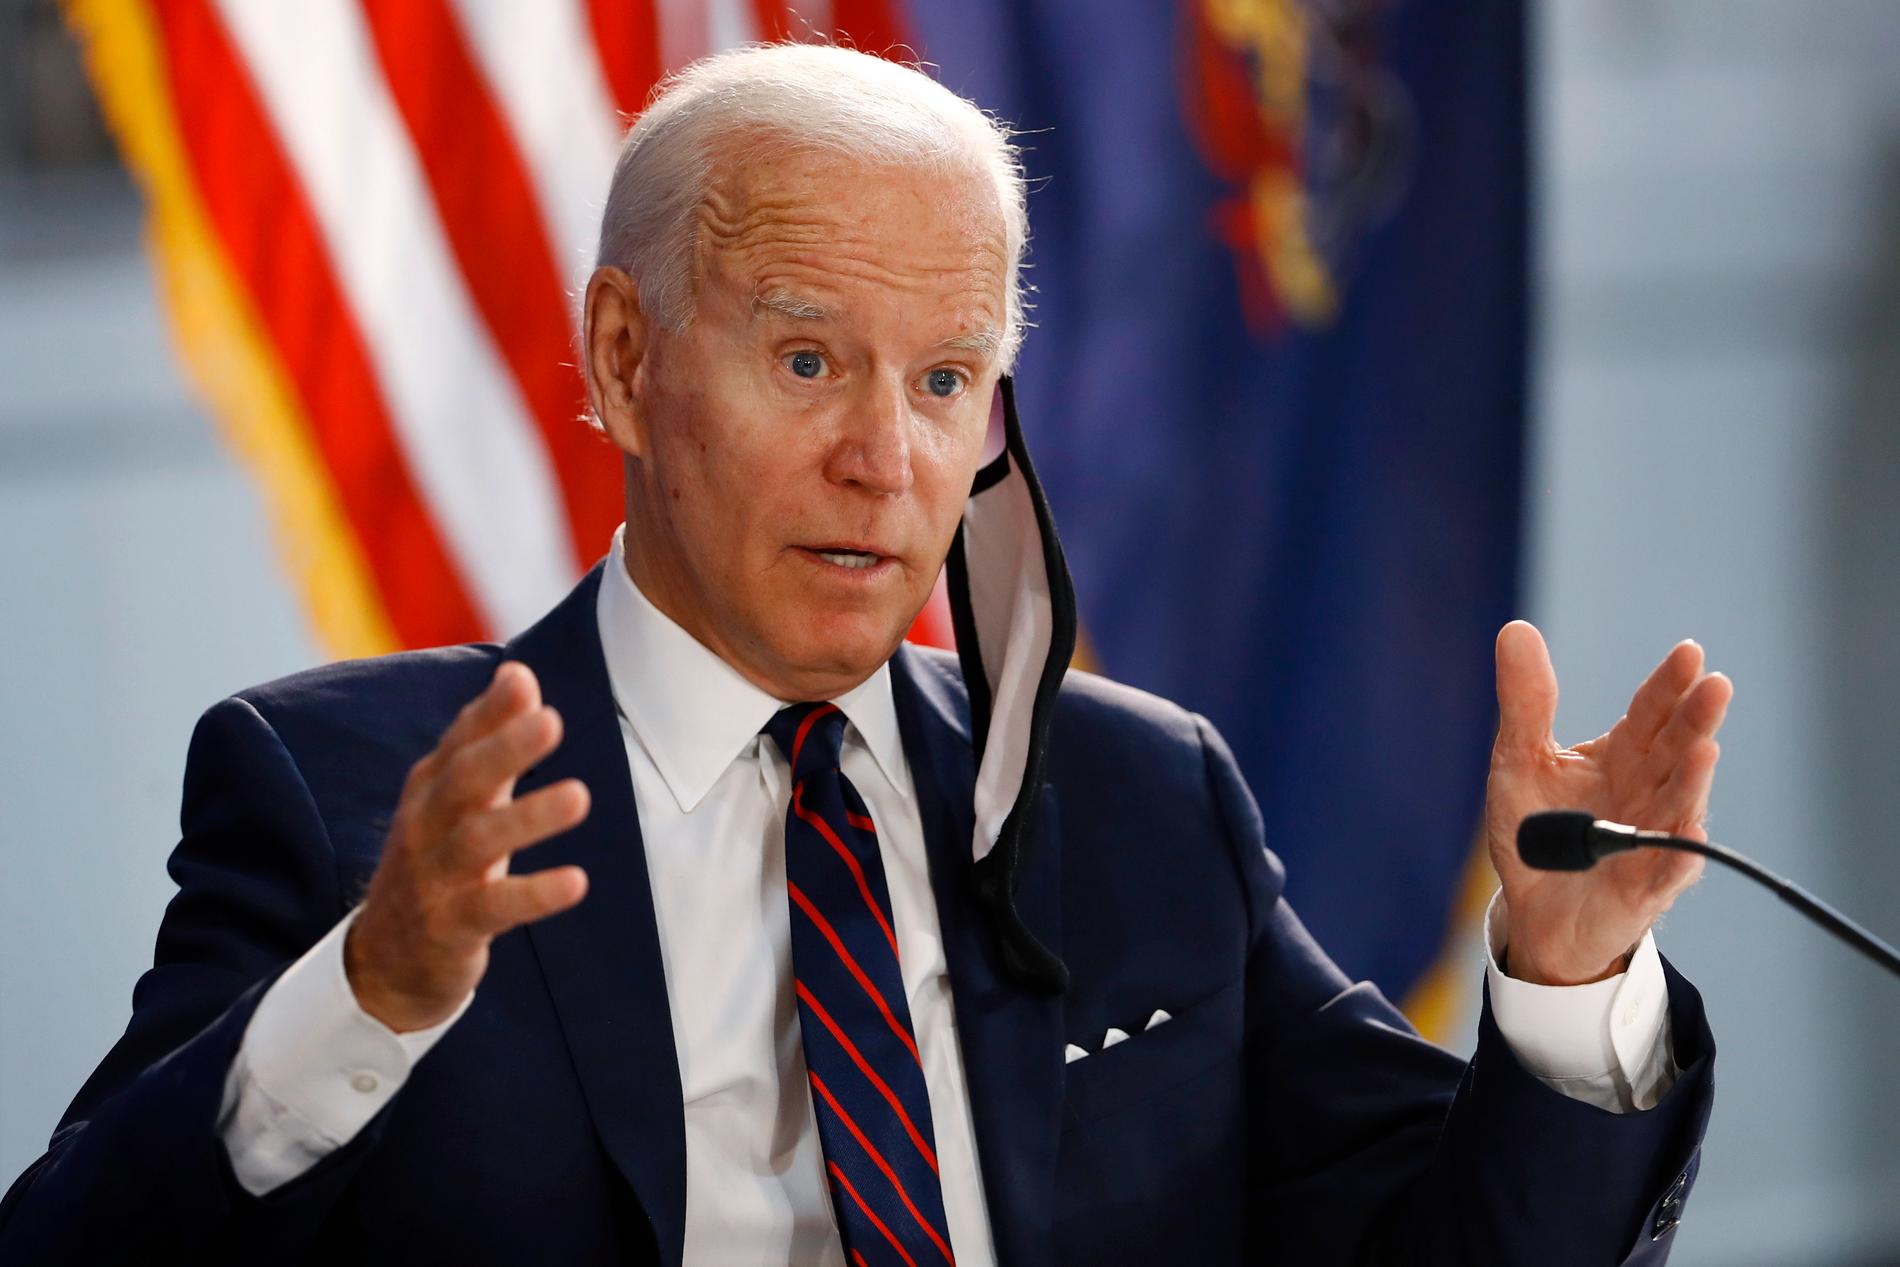 Den tidigare vicepresidenten Joe Biden utses med all sannolikhet till Demokraternas presidentkandidat senare i sommar och blir därmed den som får möta Donald Trump i höstens presidentval.